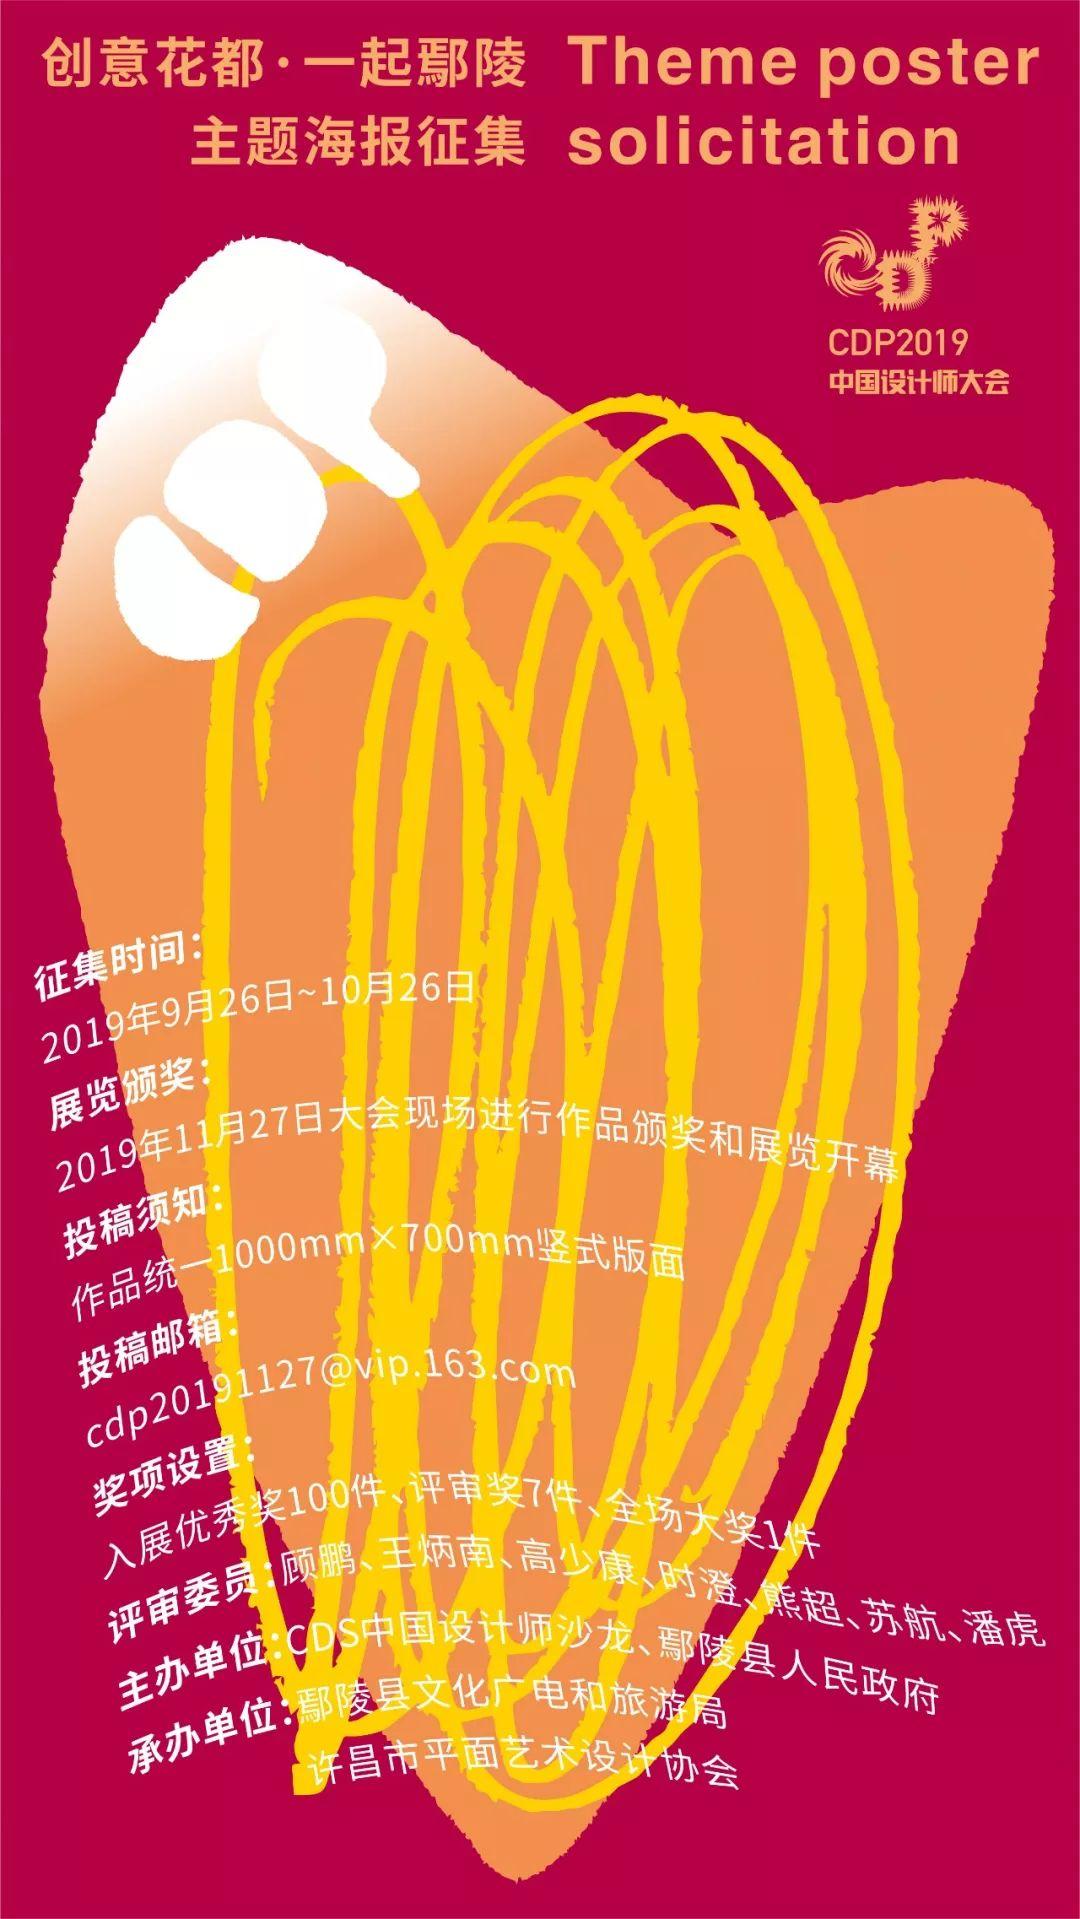 CDP2019中国设计师大会主题文创展｜主题海报征集